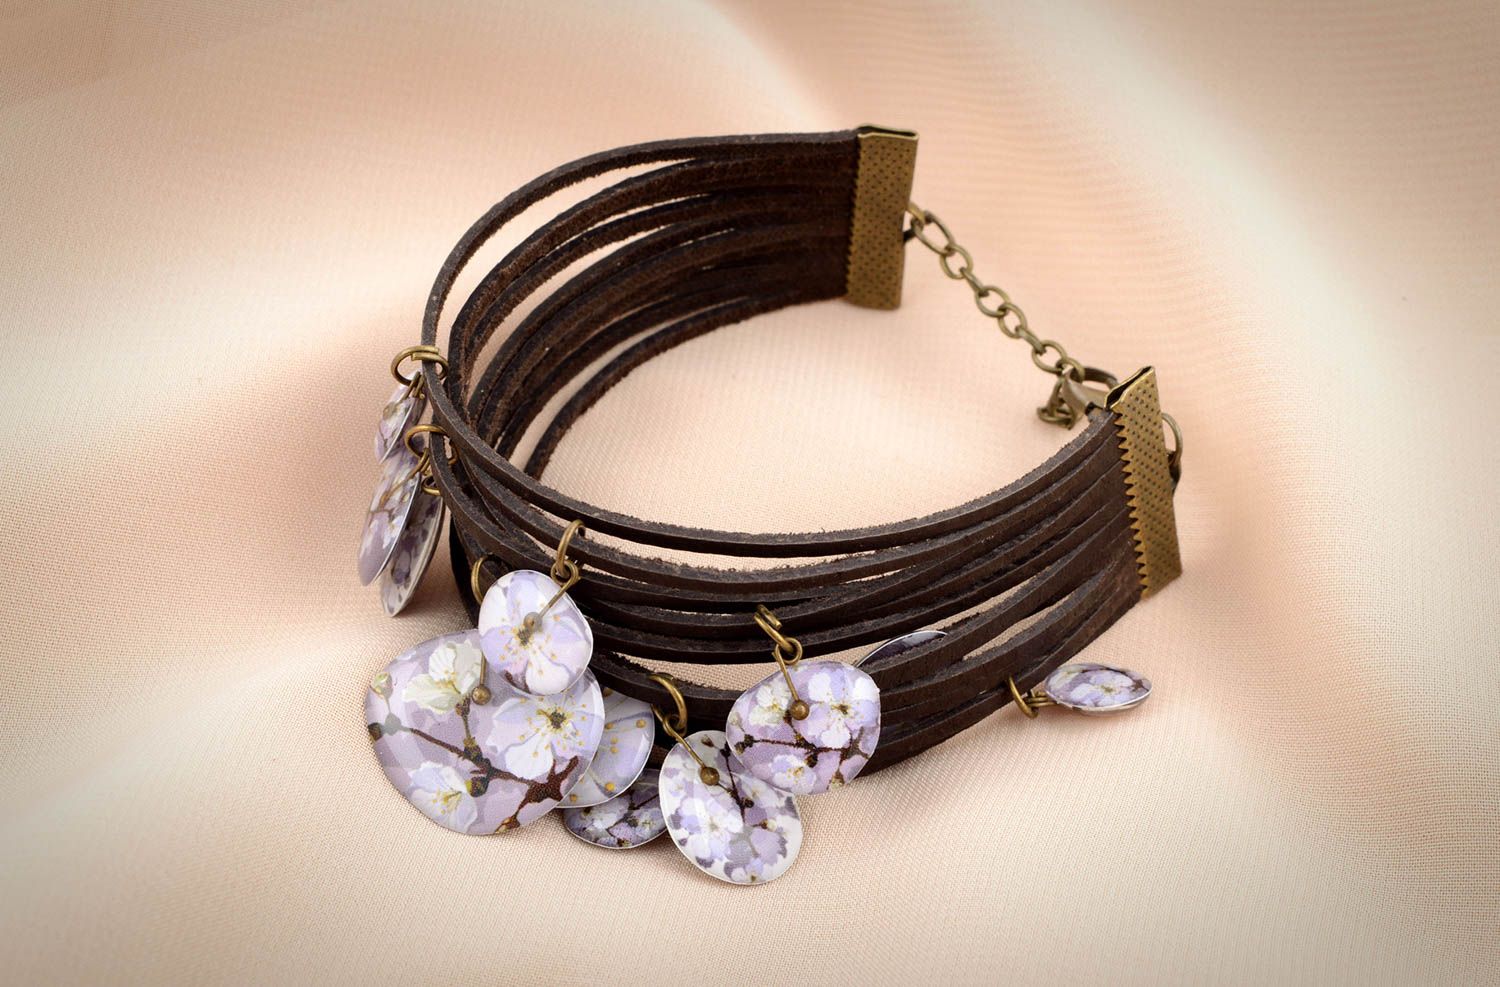 Stylish handmade leather bracelet leather cord bracelet fashion trends photo 6